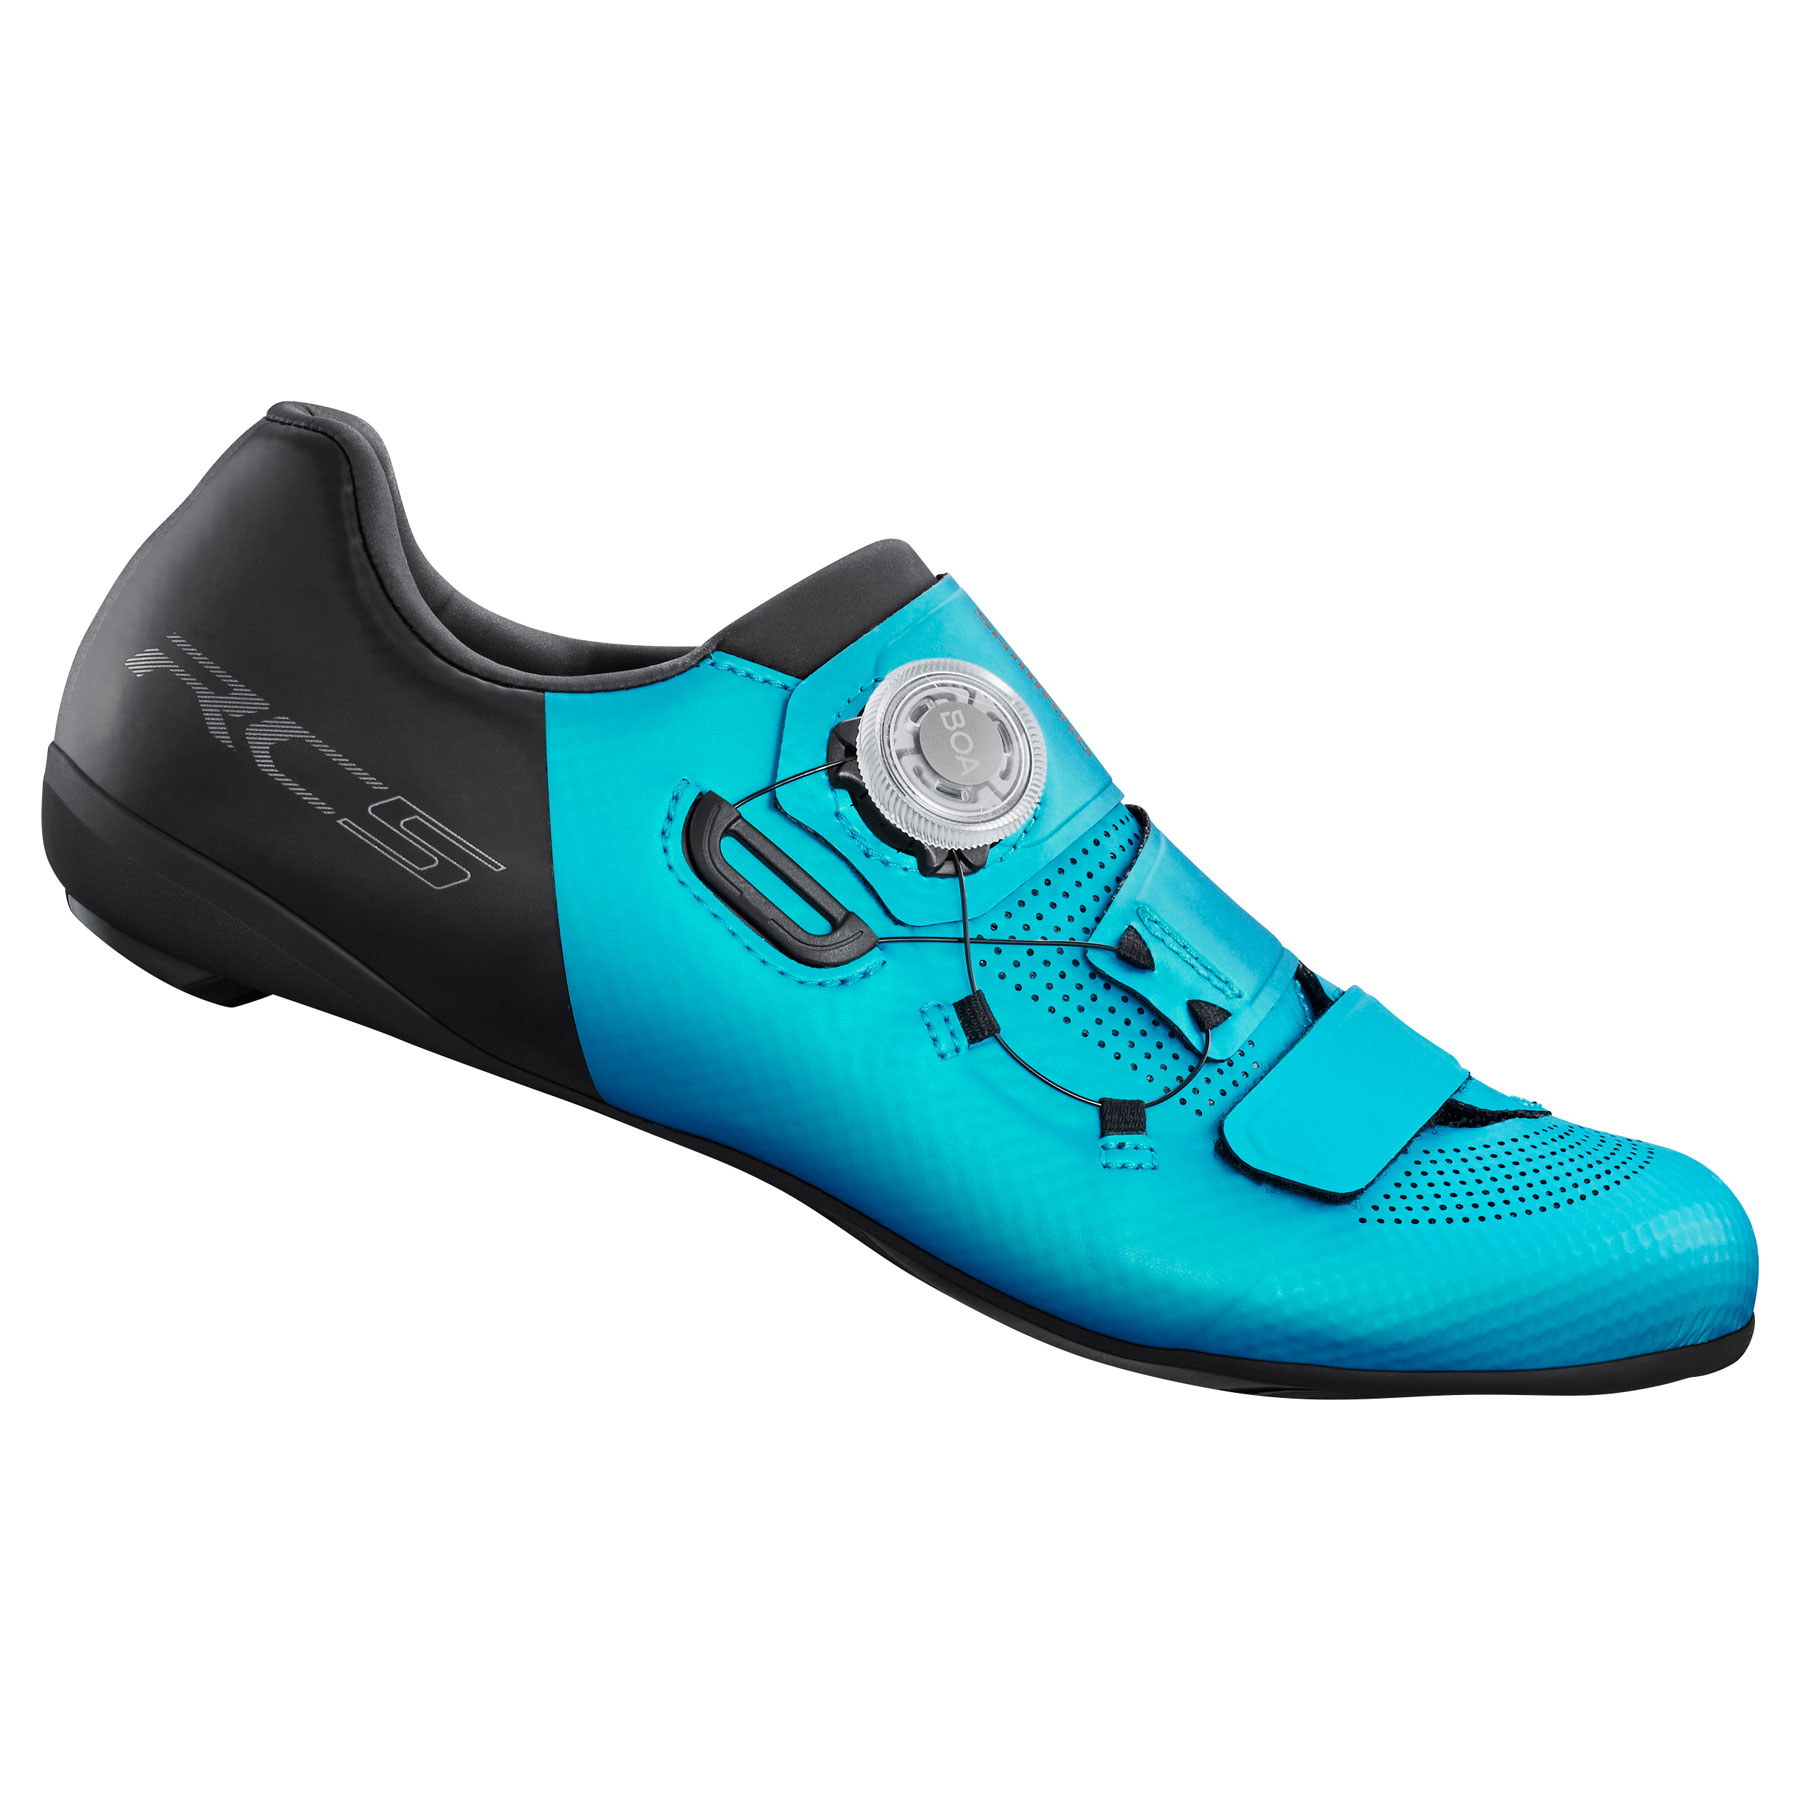 Produktbild von Shimano SH-RC502 Rennradschuhe Damen - Turquoise